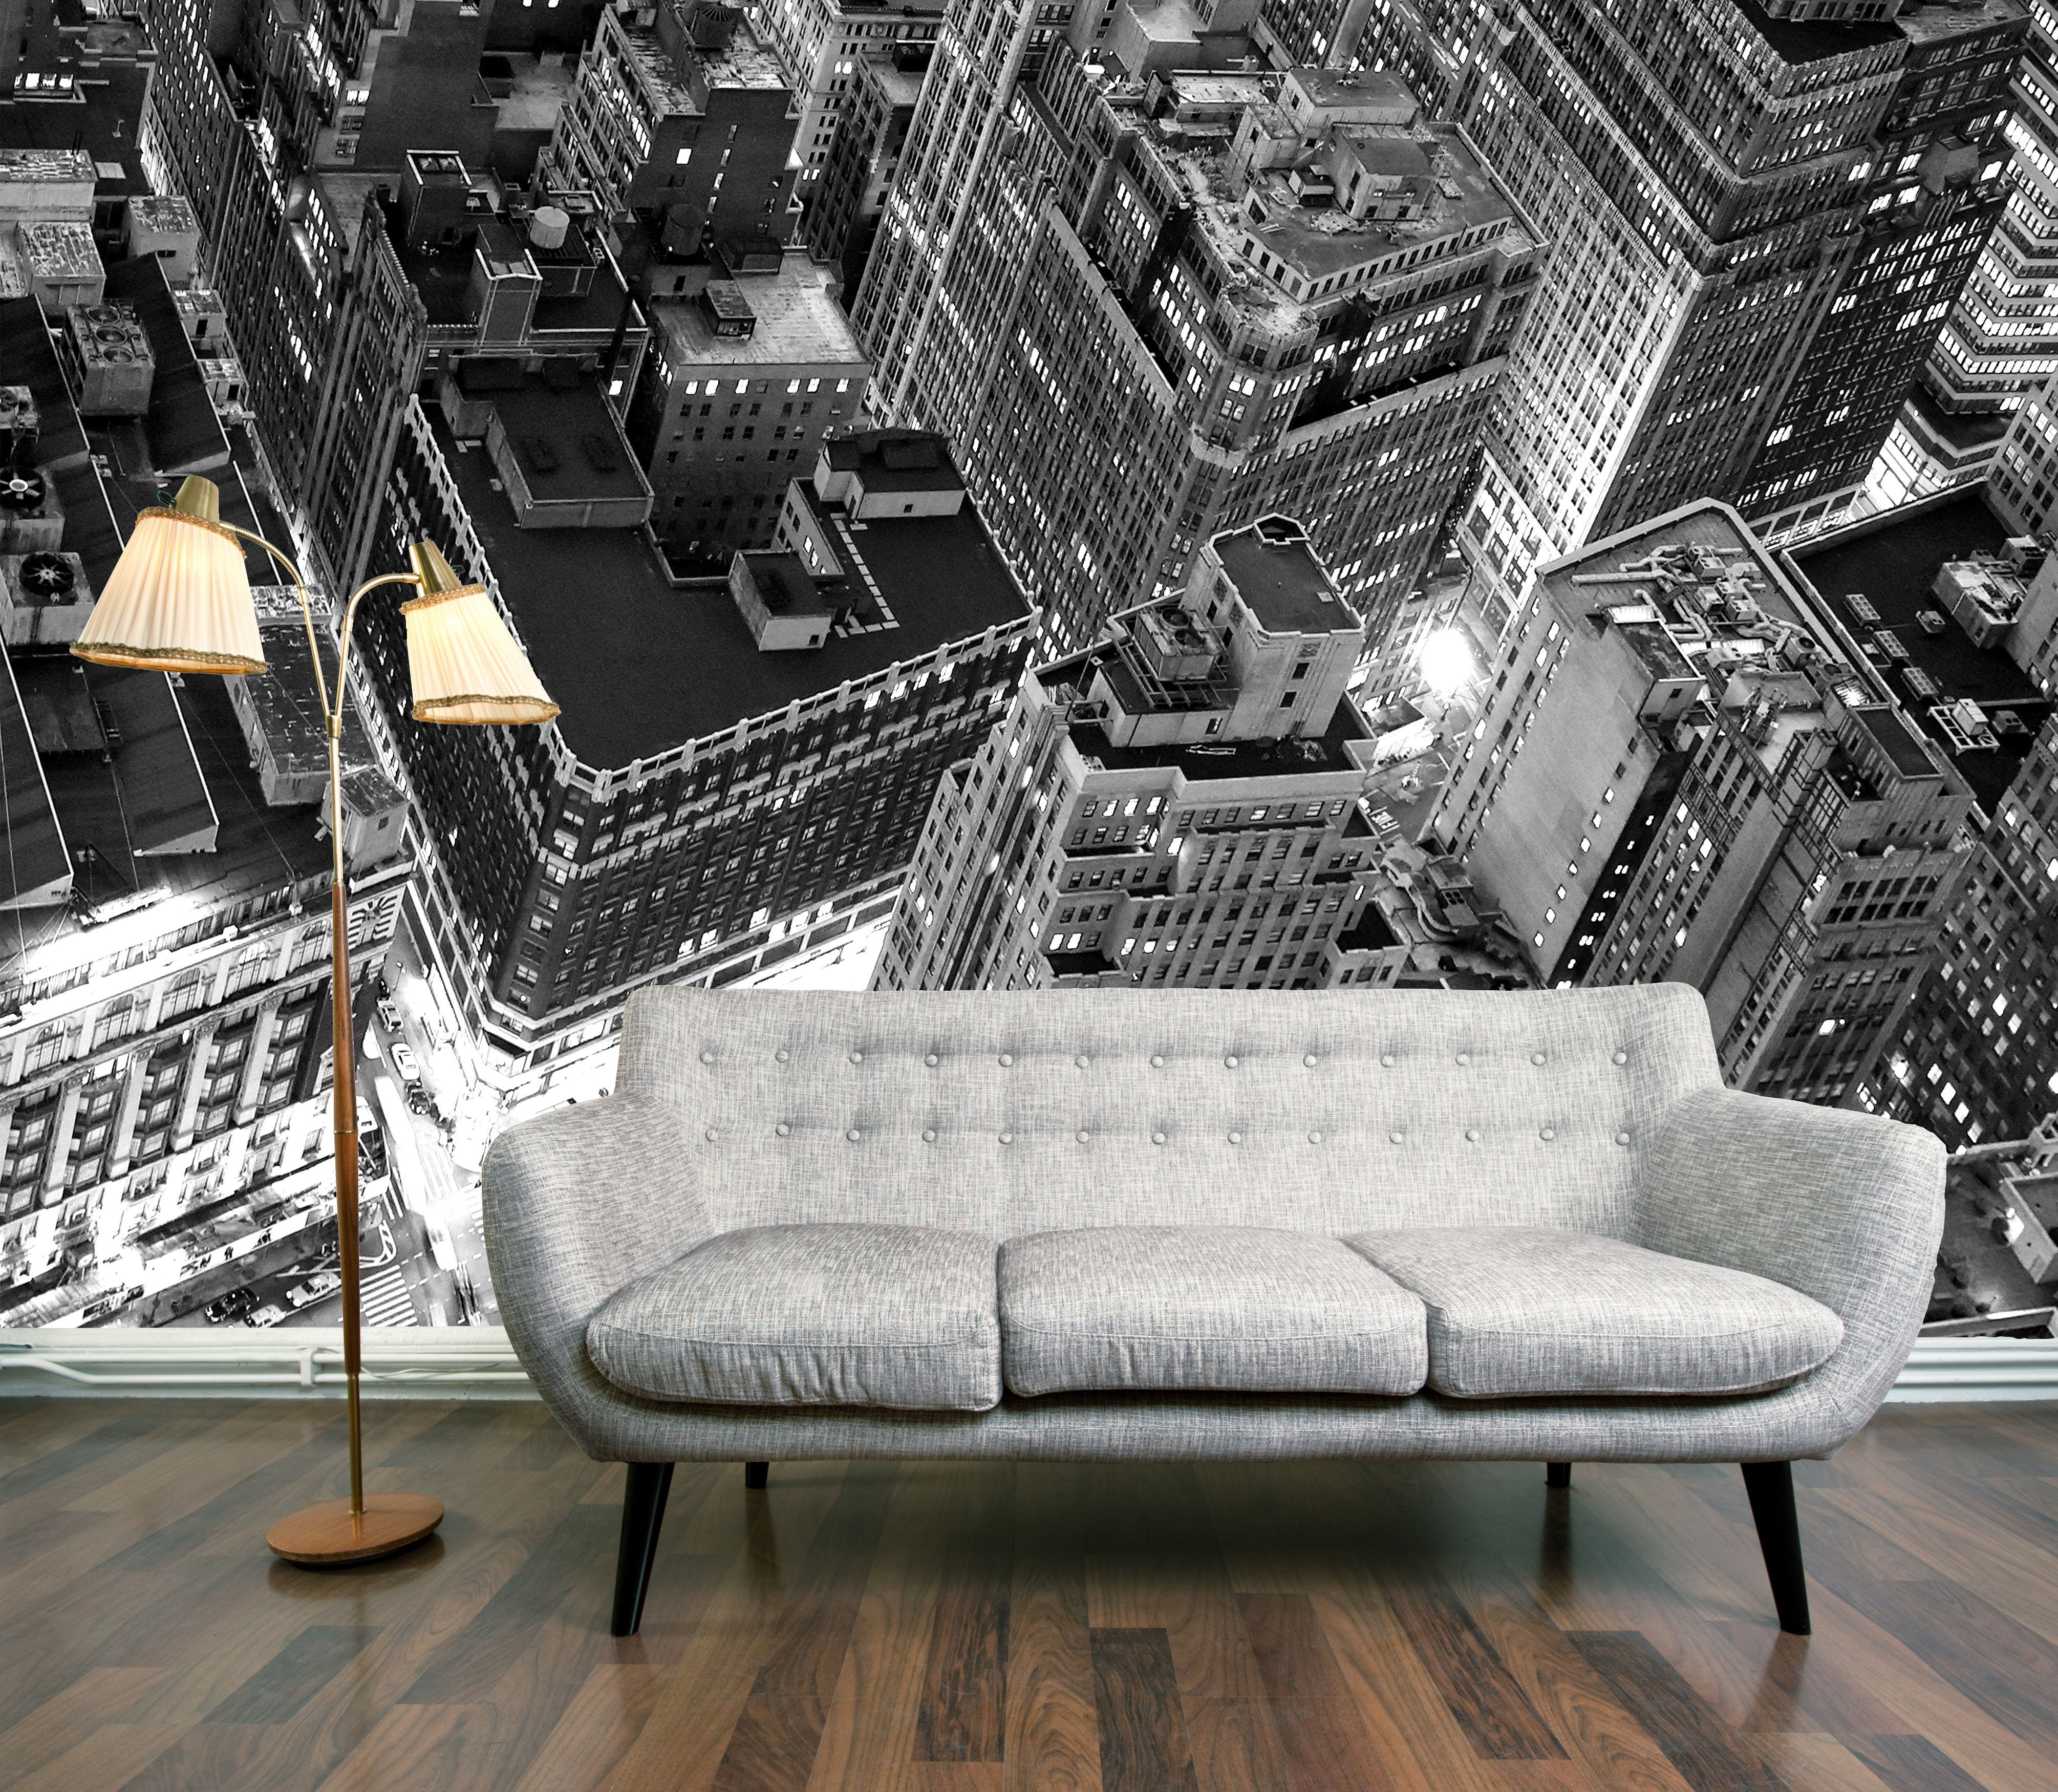 penthouse-view-wallpaper-mural.jpg